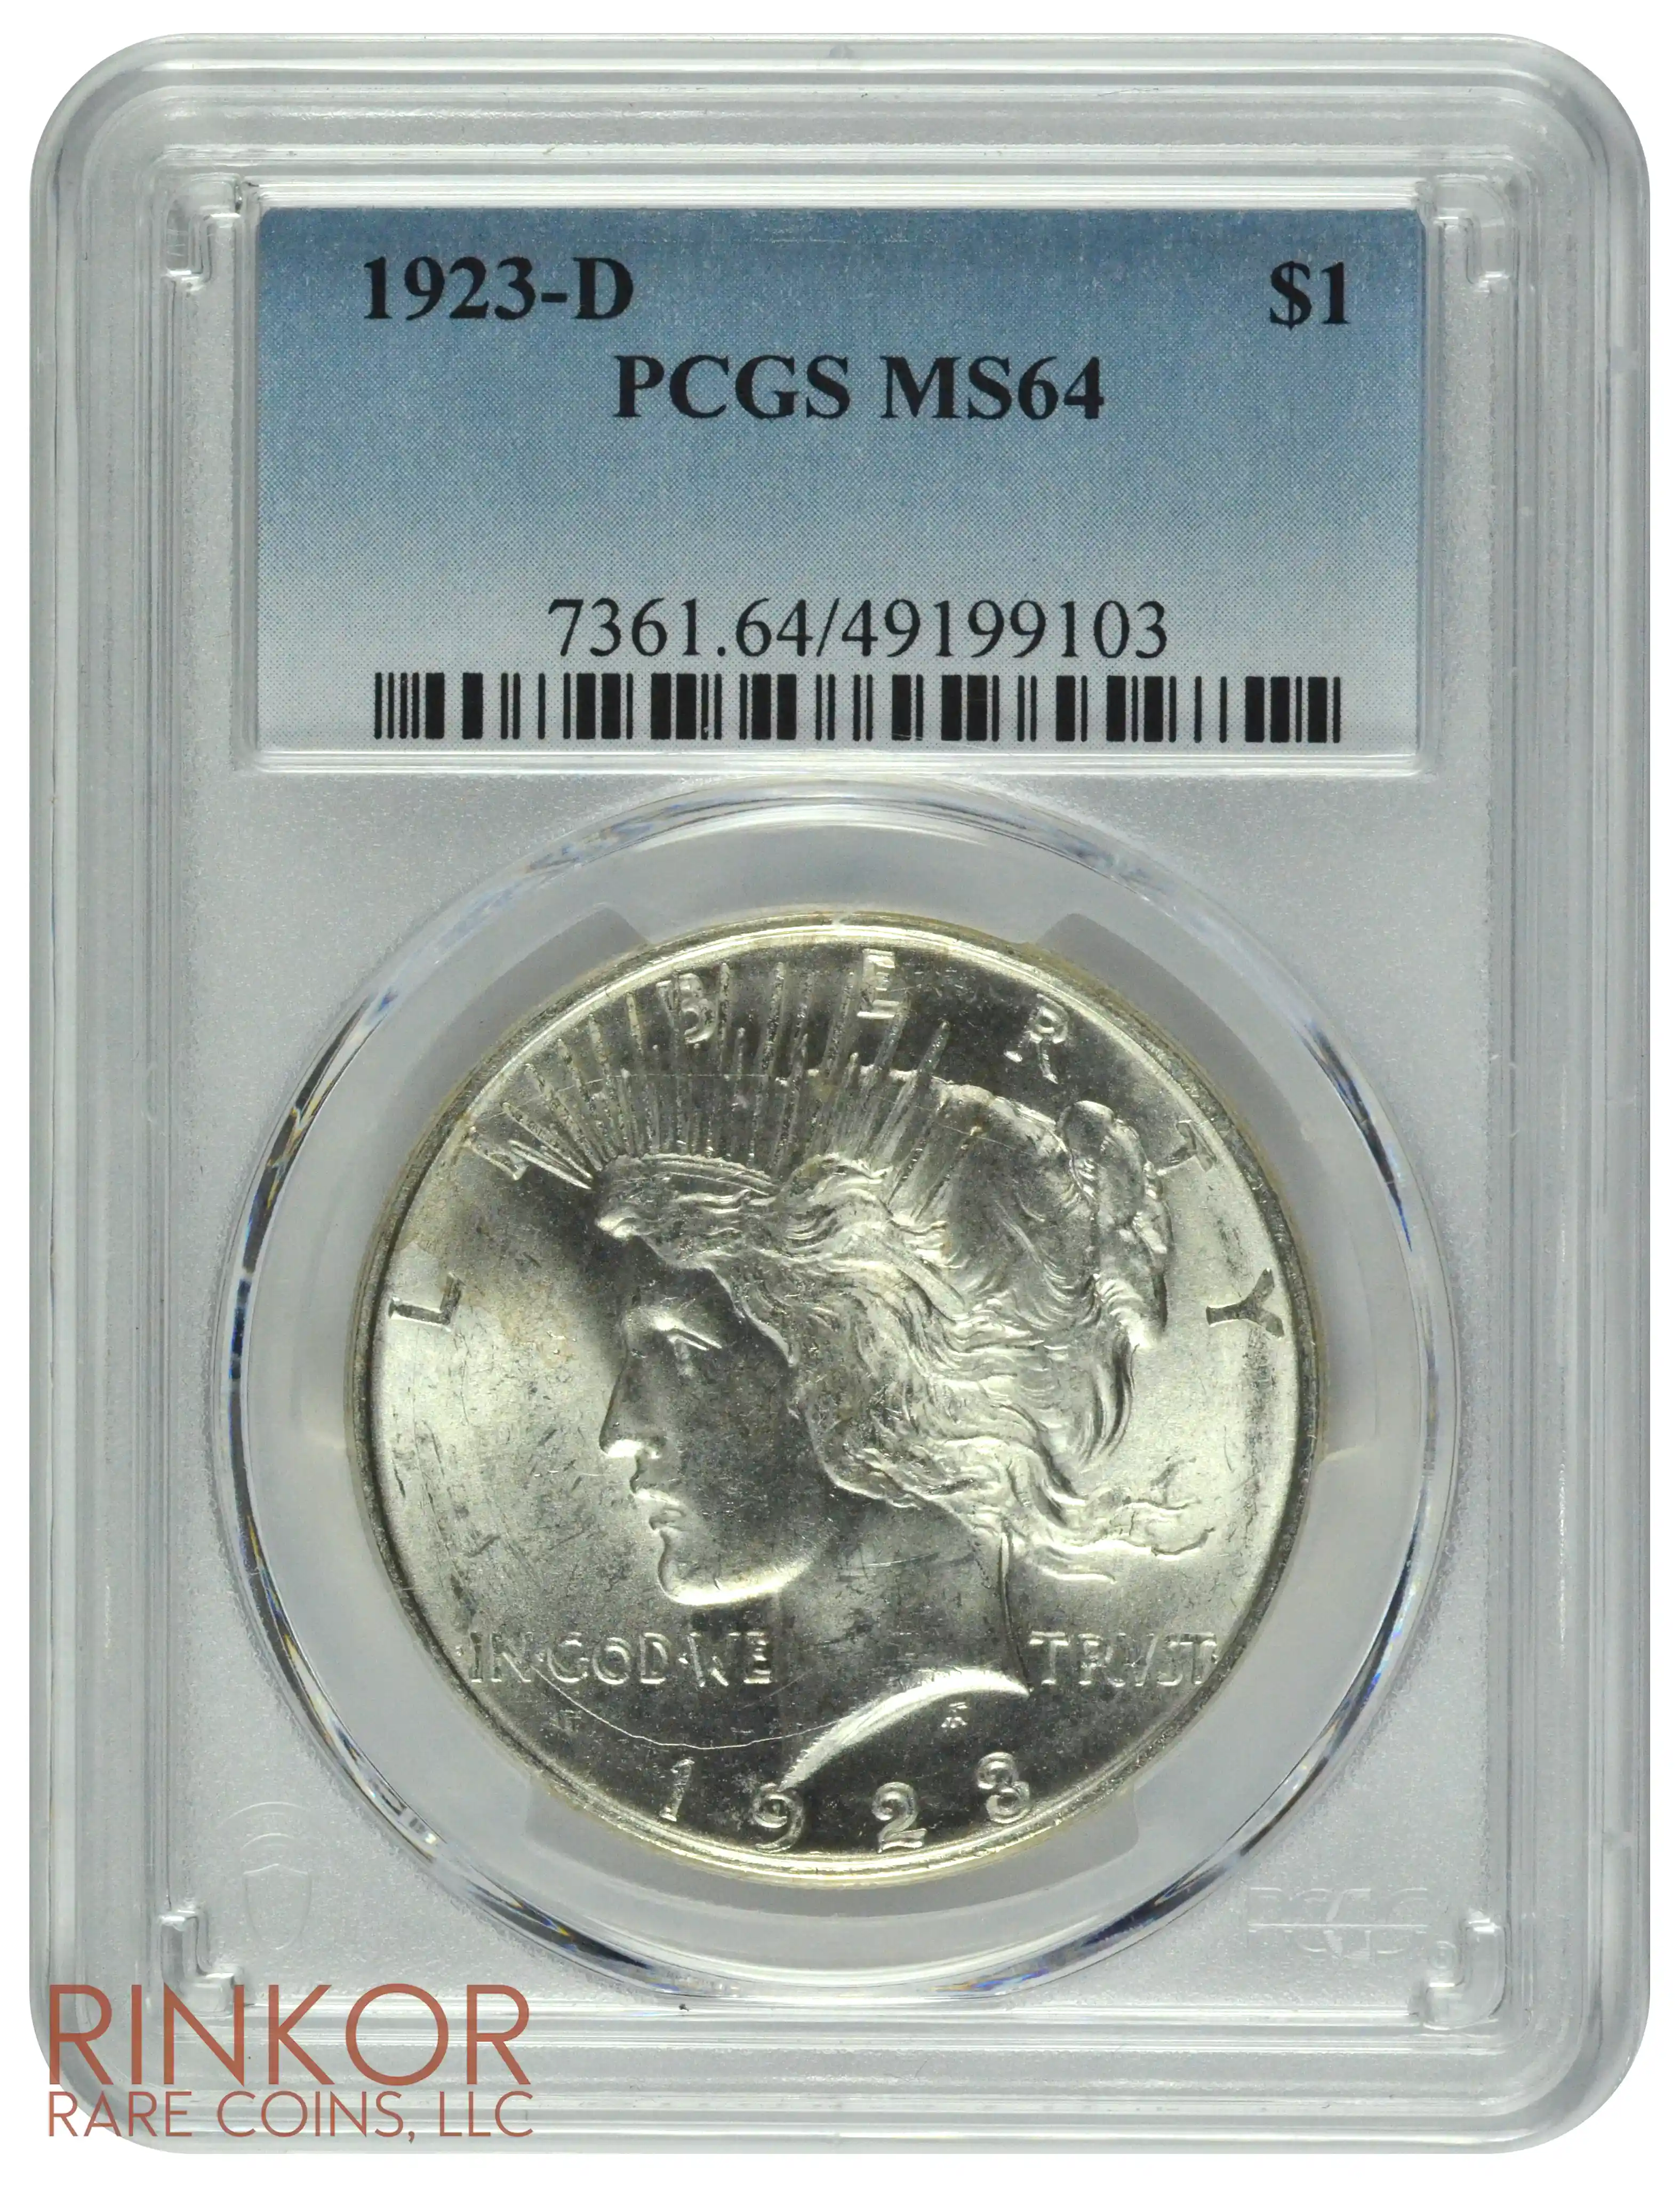 1923-D $1 PCGS MS 64